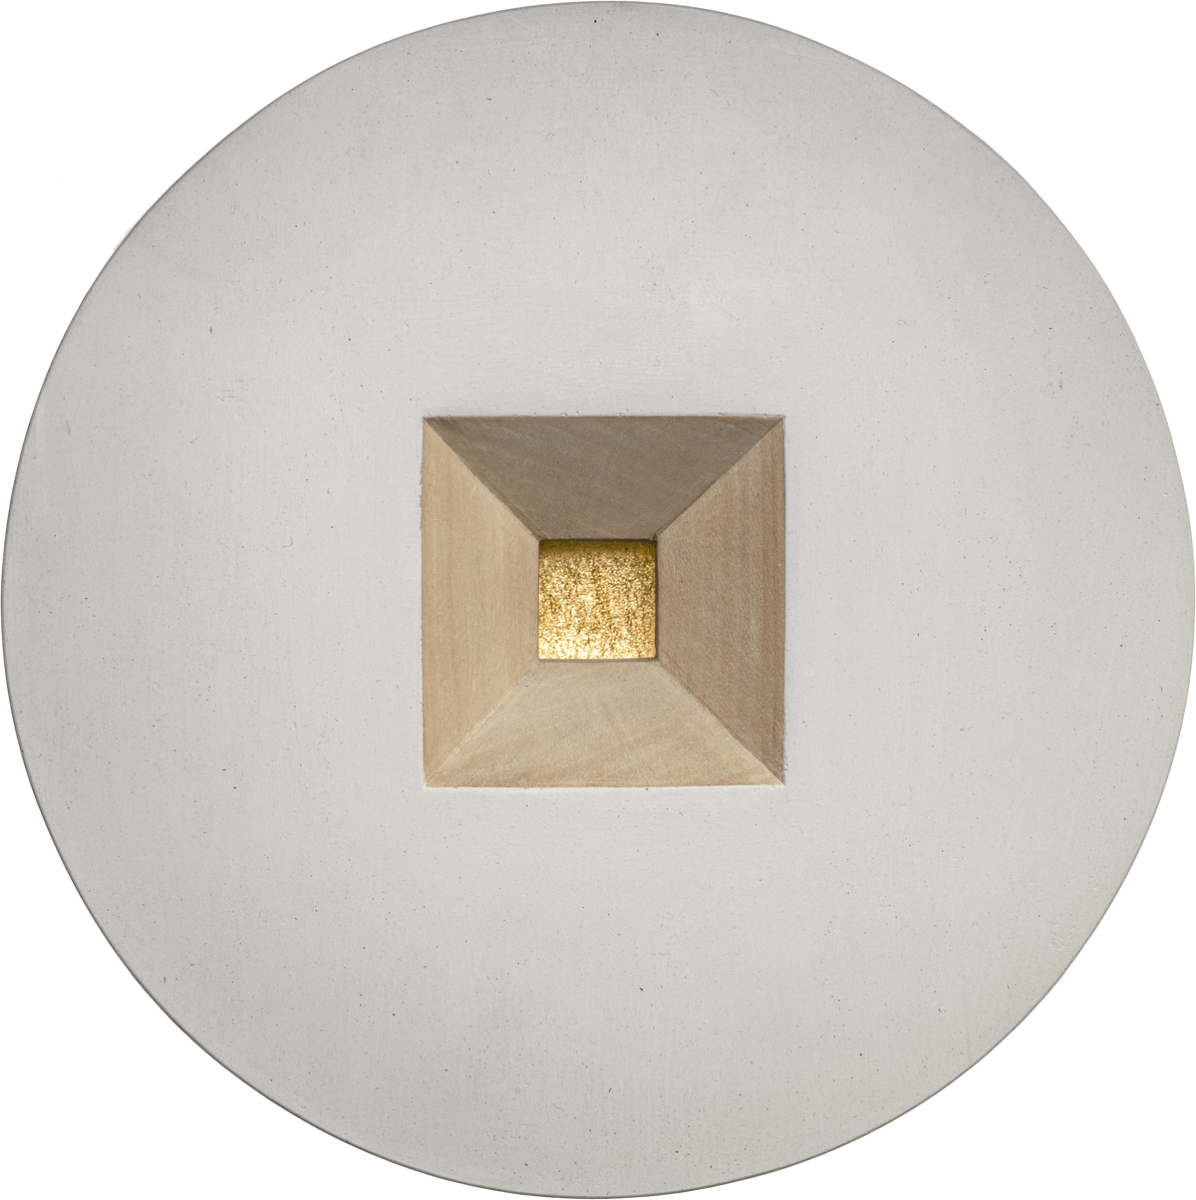 Grafika, na białym tle znajduje się szare koło, w którego centrum stoi drewniana piramida ze ściętym czubkiem. Płaski dach piramidy wykonany jest ze złota.